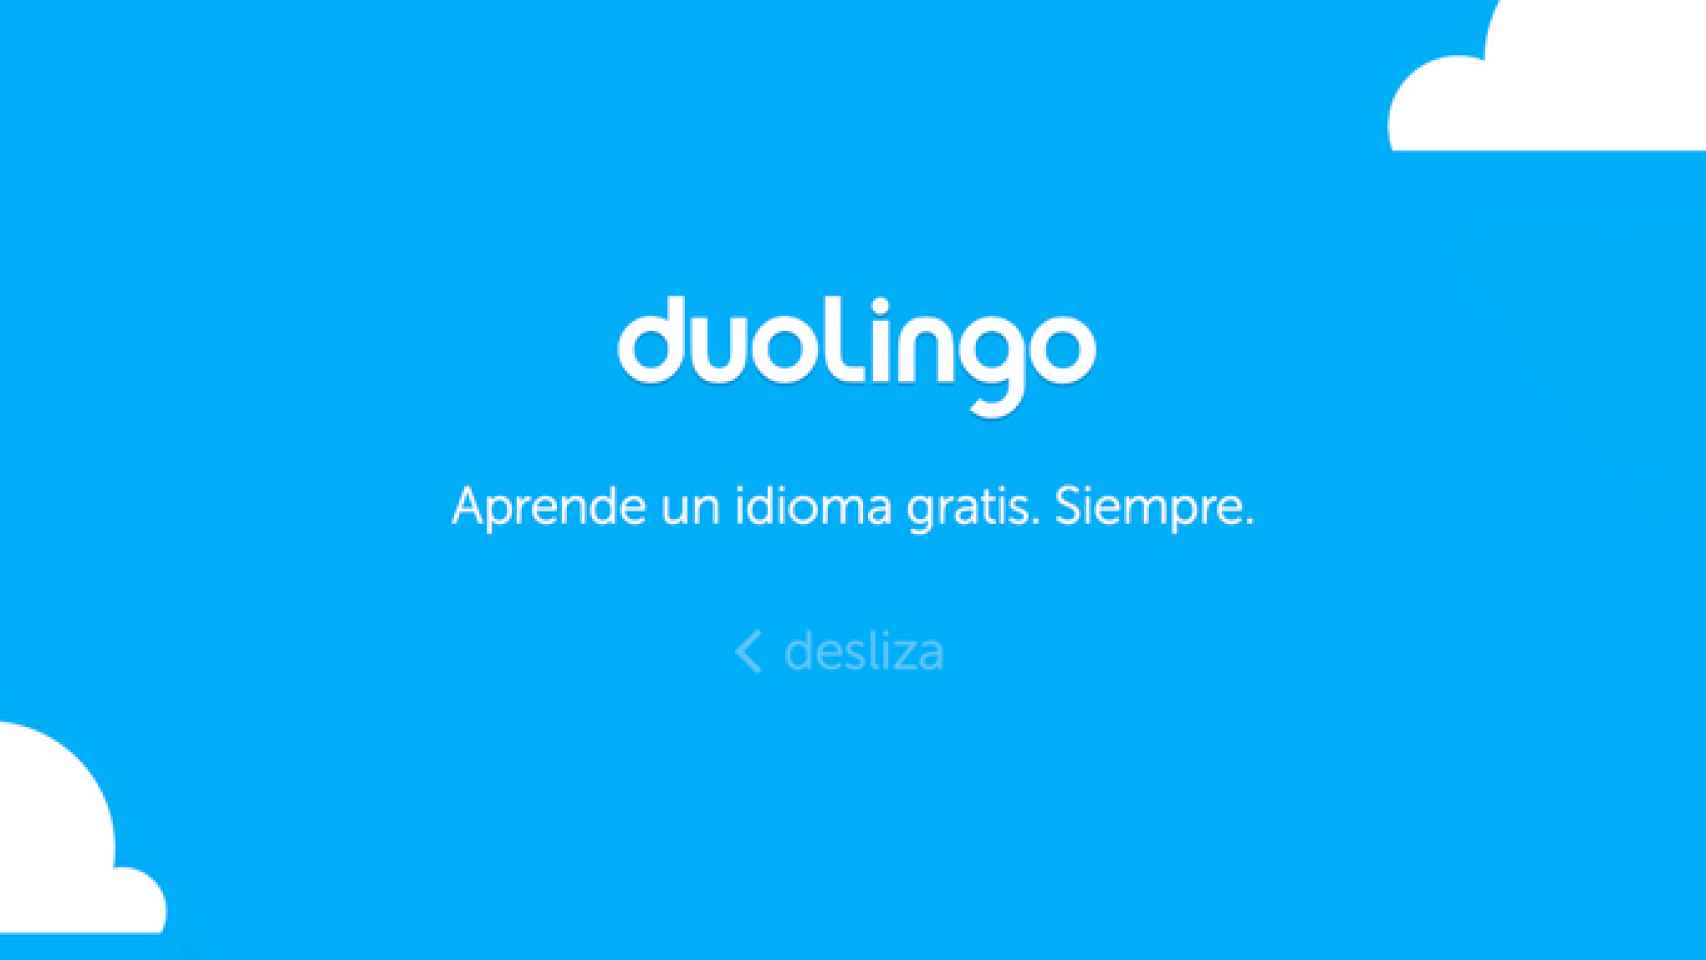 Duolingo 2.0 actualizado con una renovada interfaz. Aprende idiomas con estilo